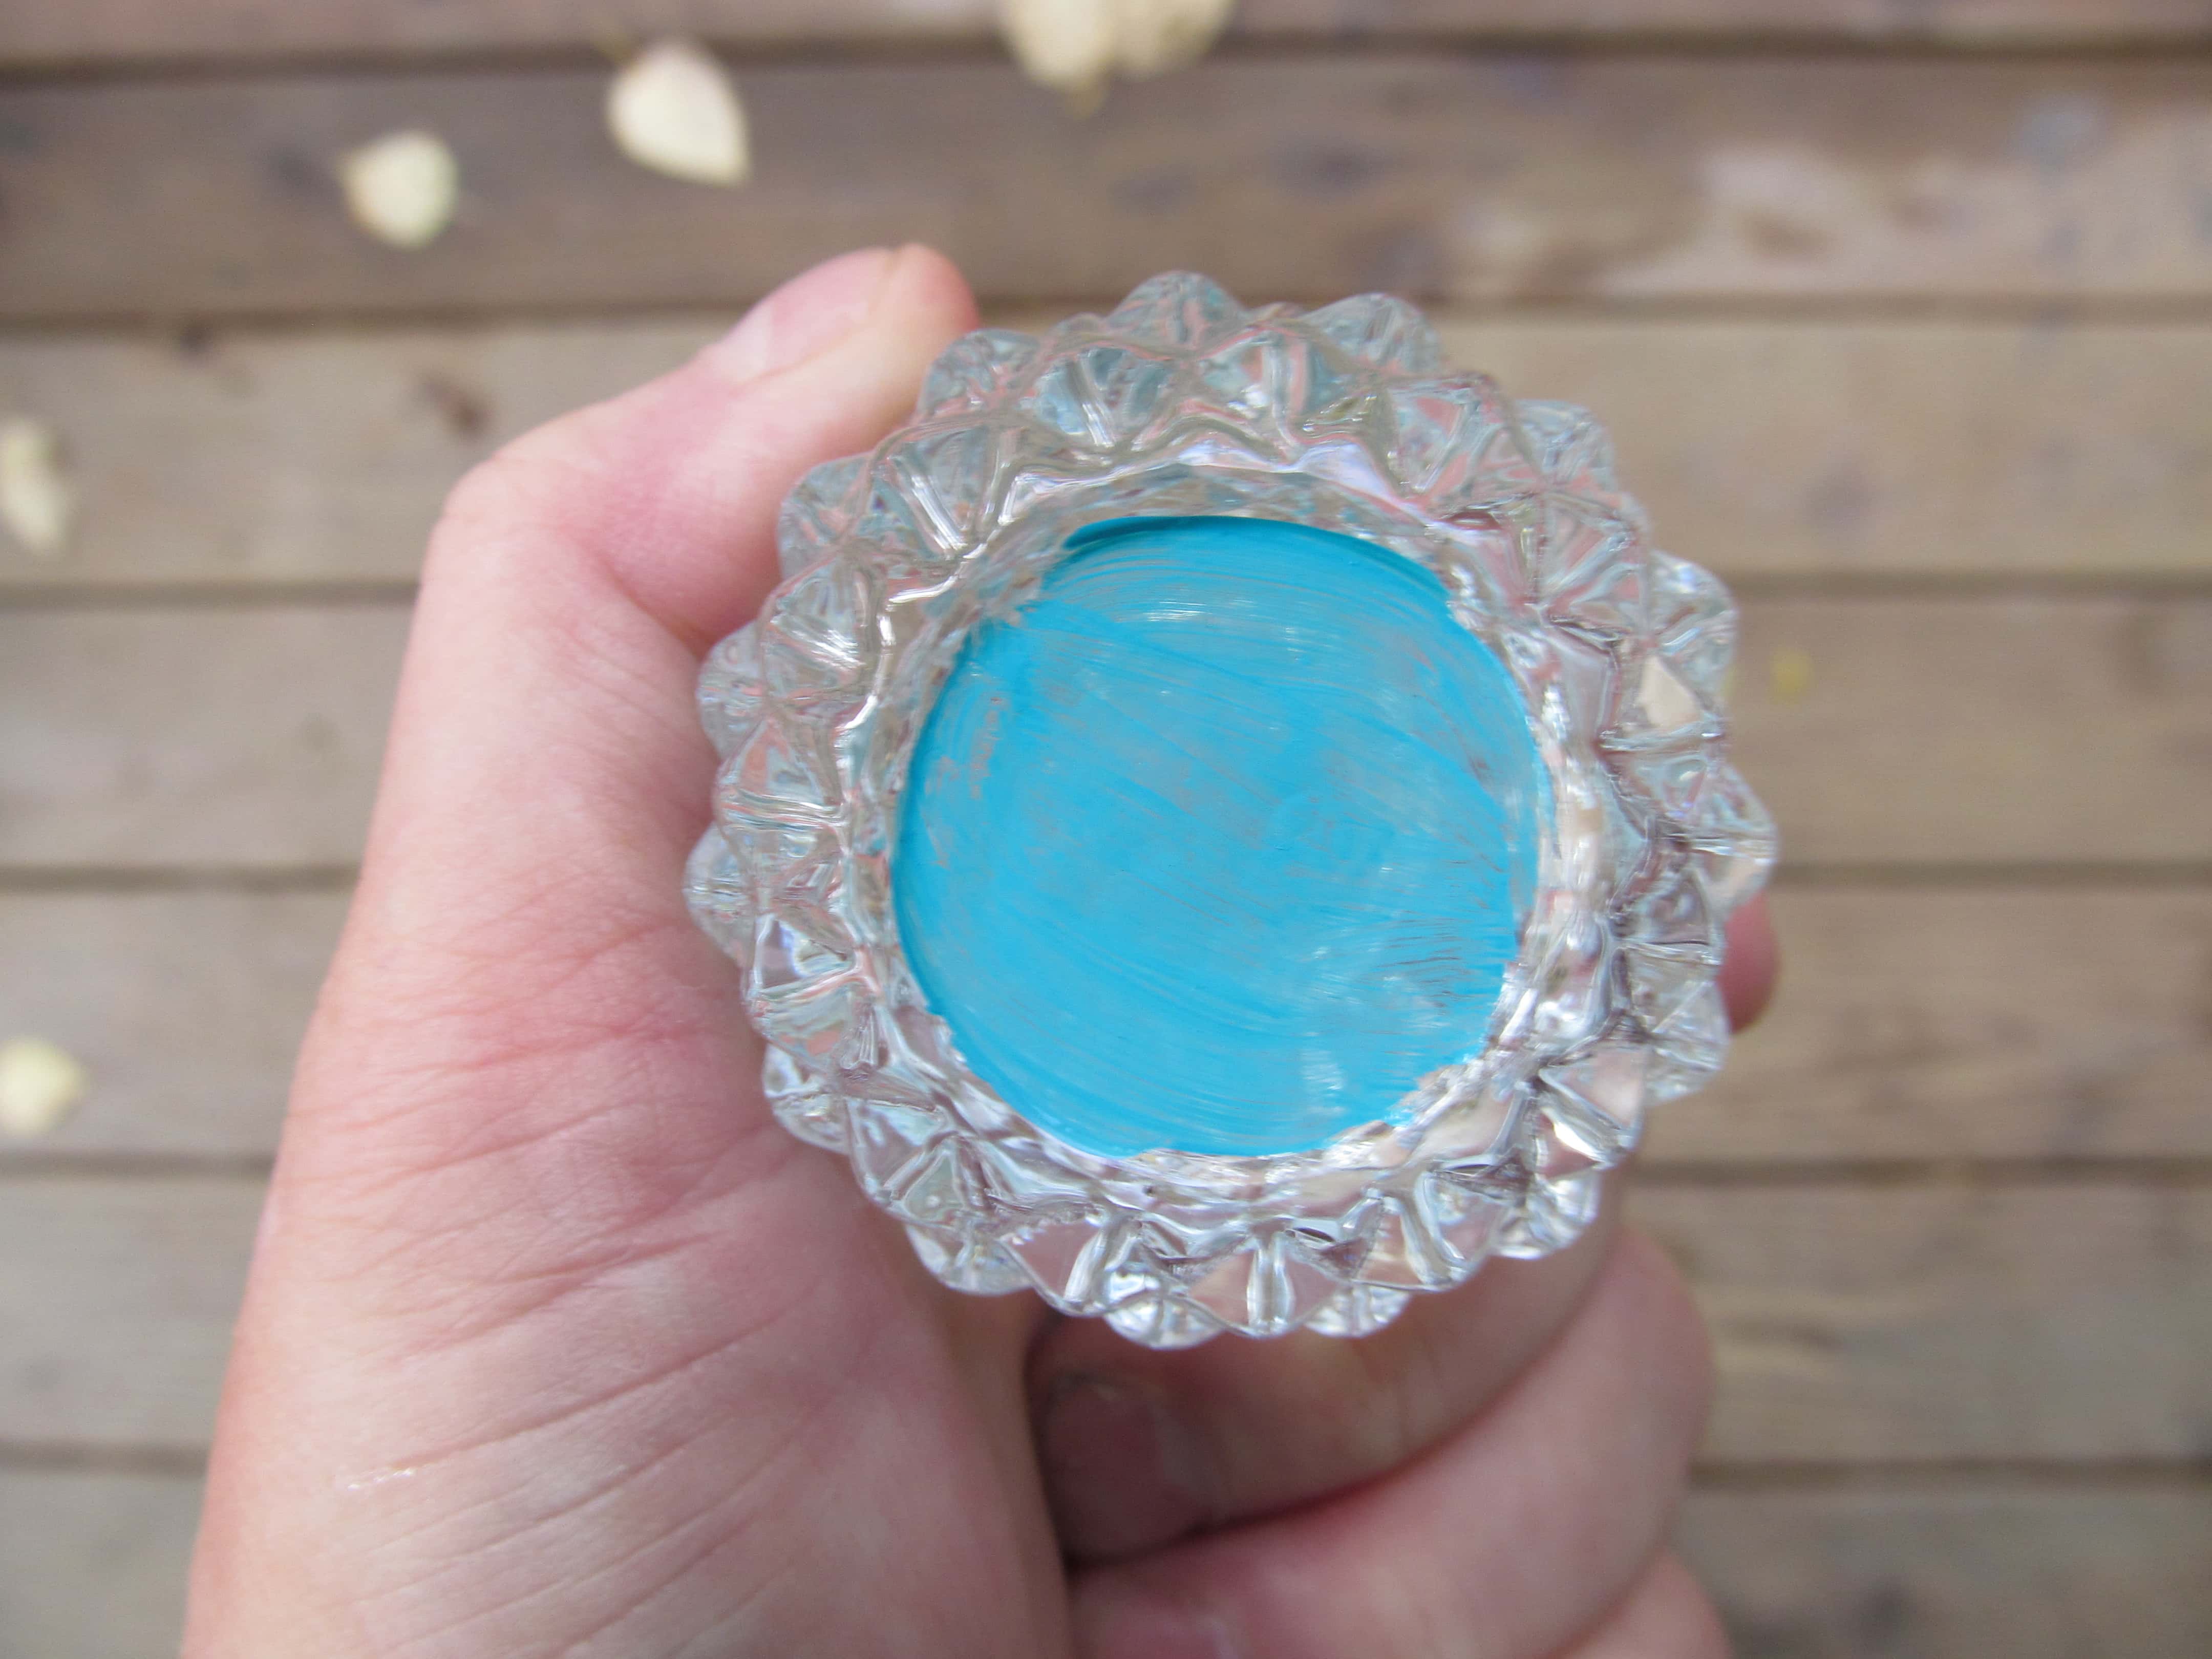 Fundo Pintado de um castiçal de vidro cortado com tinta azul. Ele reflete a cor em todo o vidro, fazendo com que o vidro transparente pareça naturalmente azul.